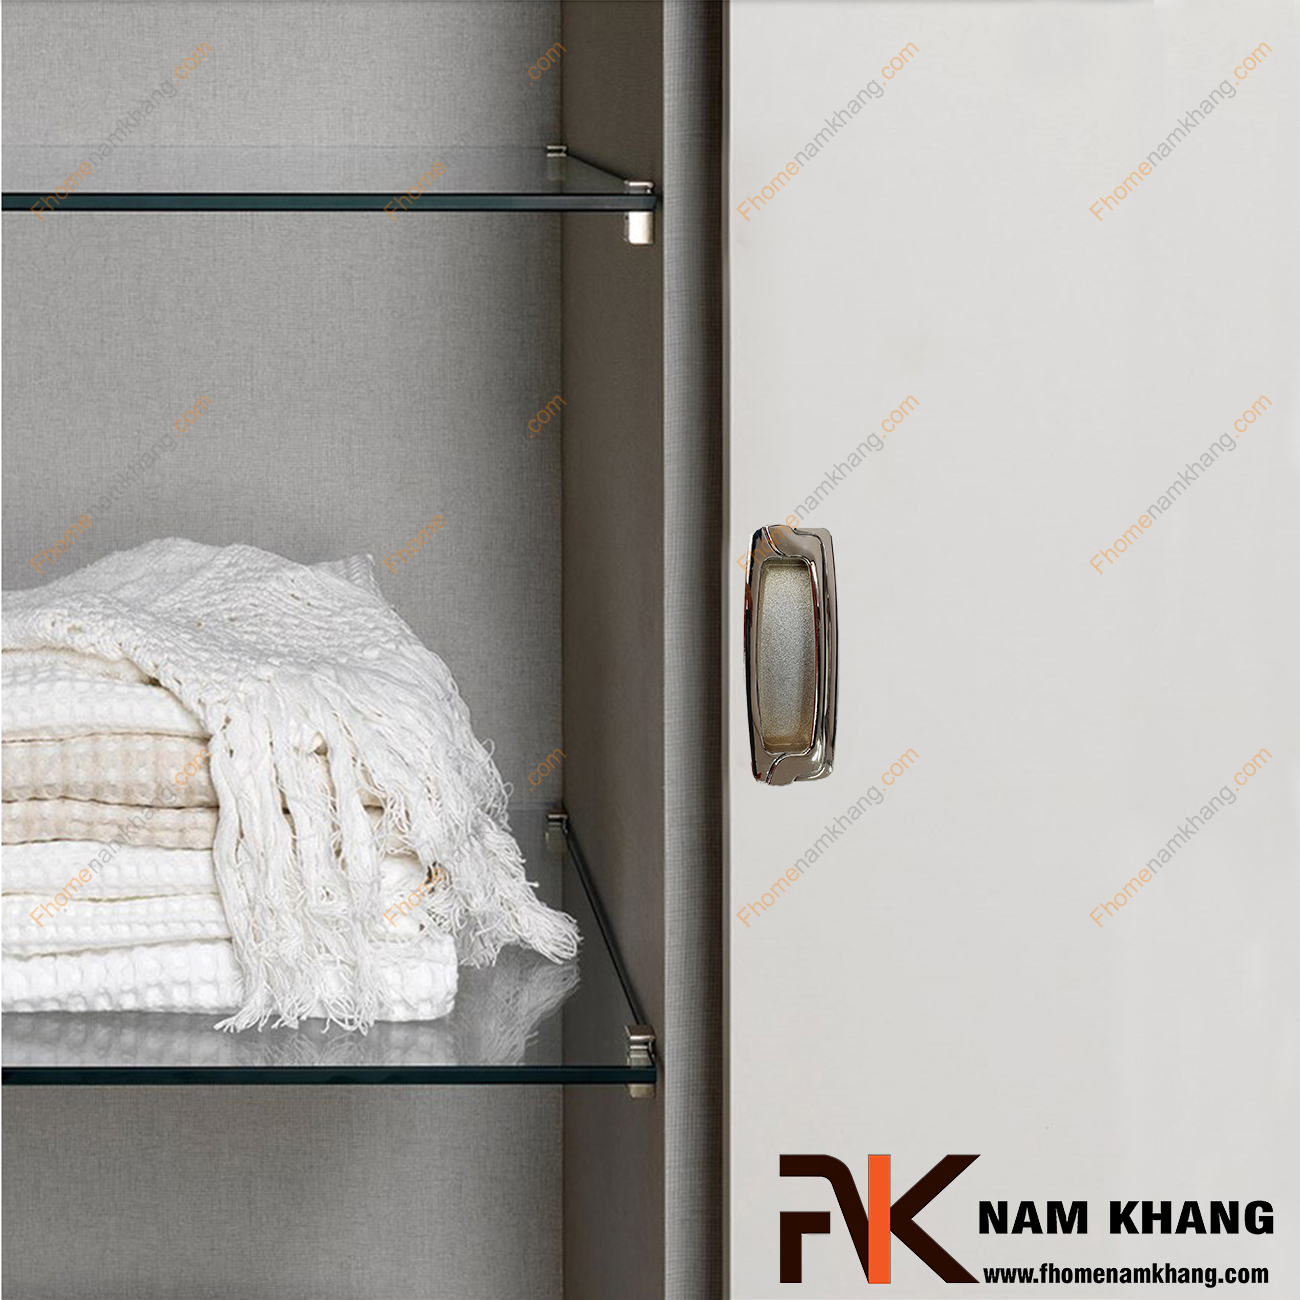 Tay nắm âm tủ xám bạc NK064-96XB là loại tay nắm chuyên dùng cho các loại tủ đặt ở những nơi có không gian hạn chế hoặc dùng để nâng cao tính thẫm mỹ của sản phẩm.